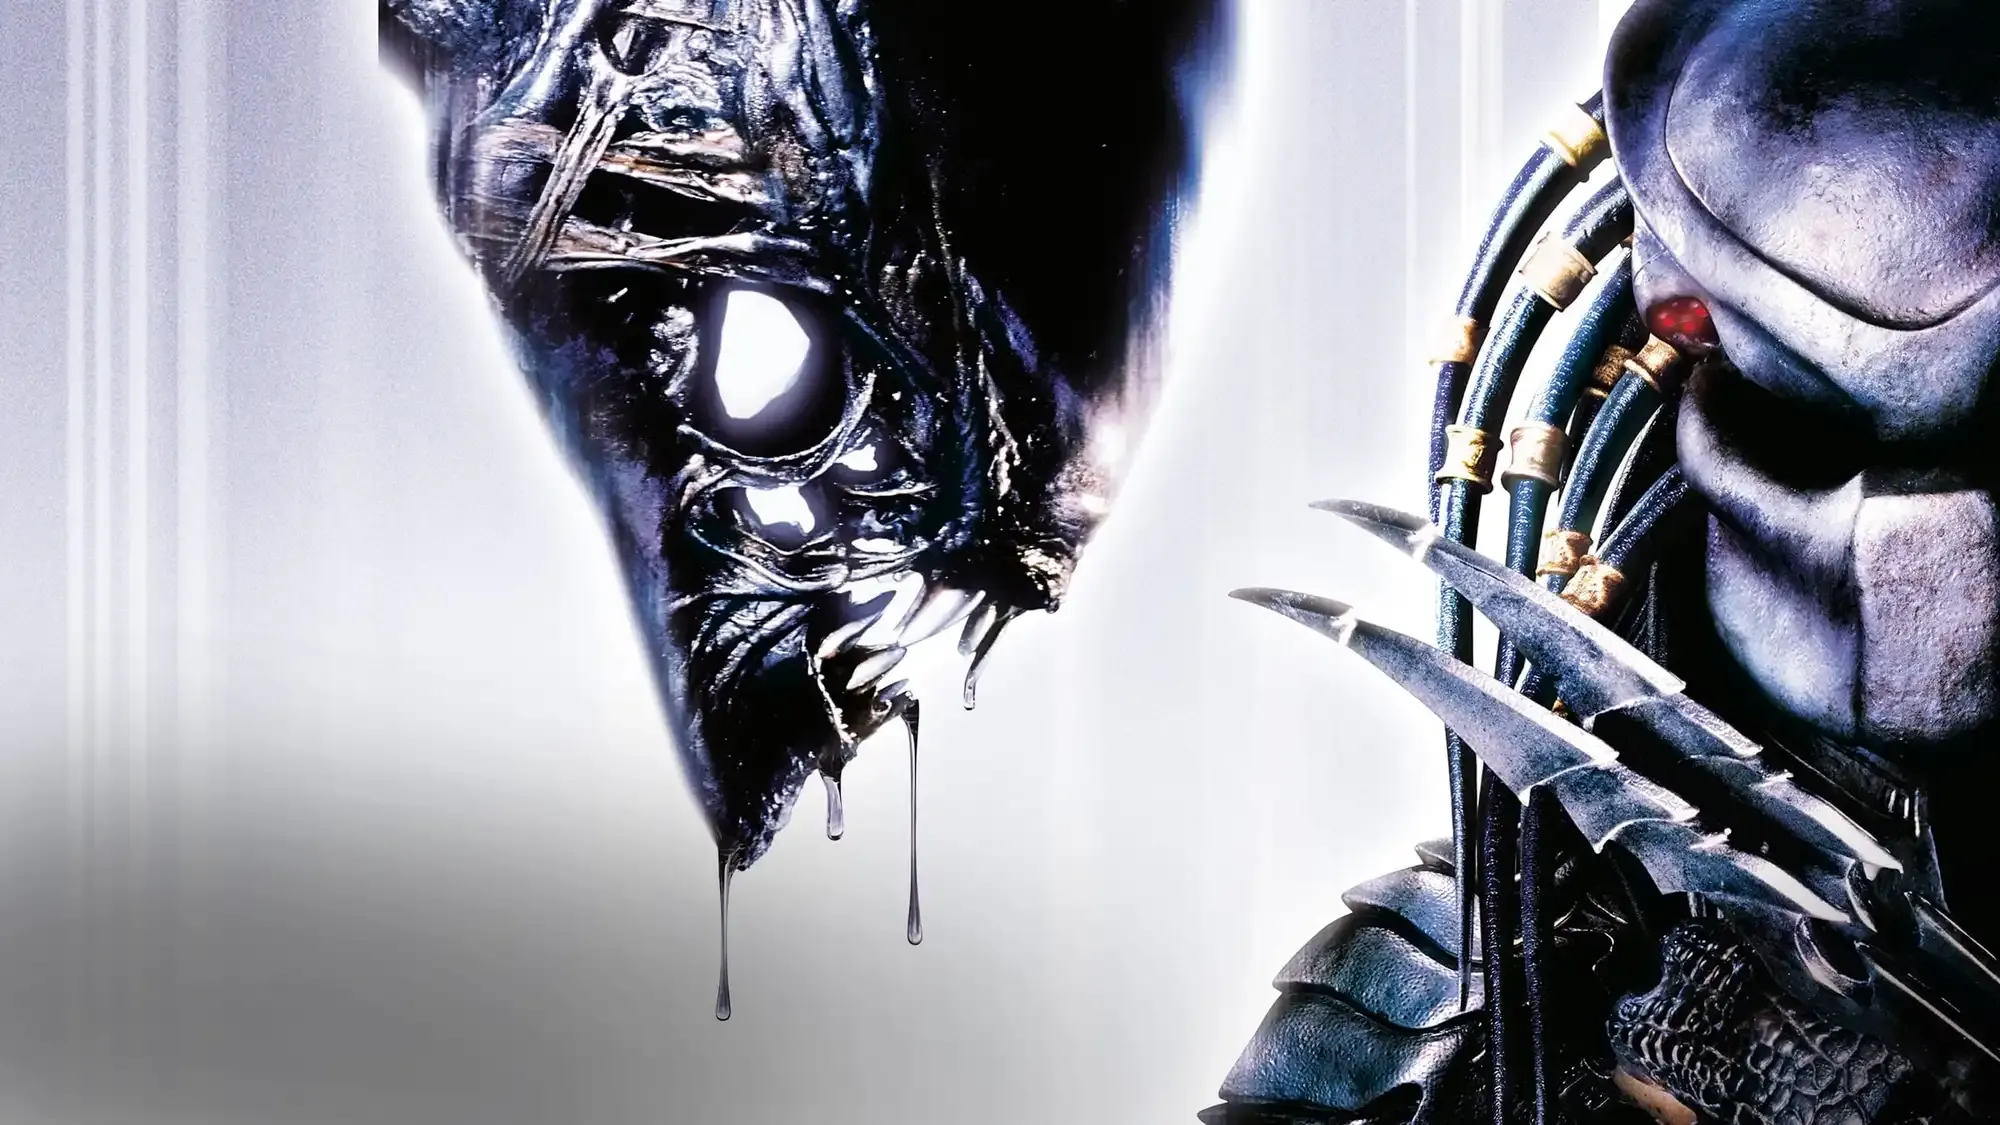 AVP: Alien vs. Predator movie review